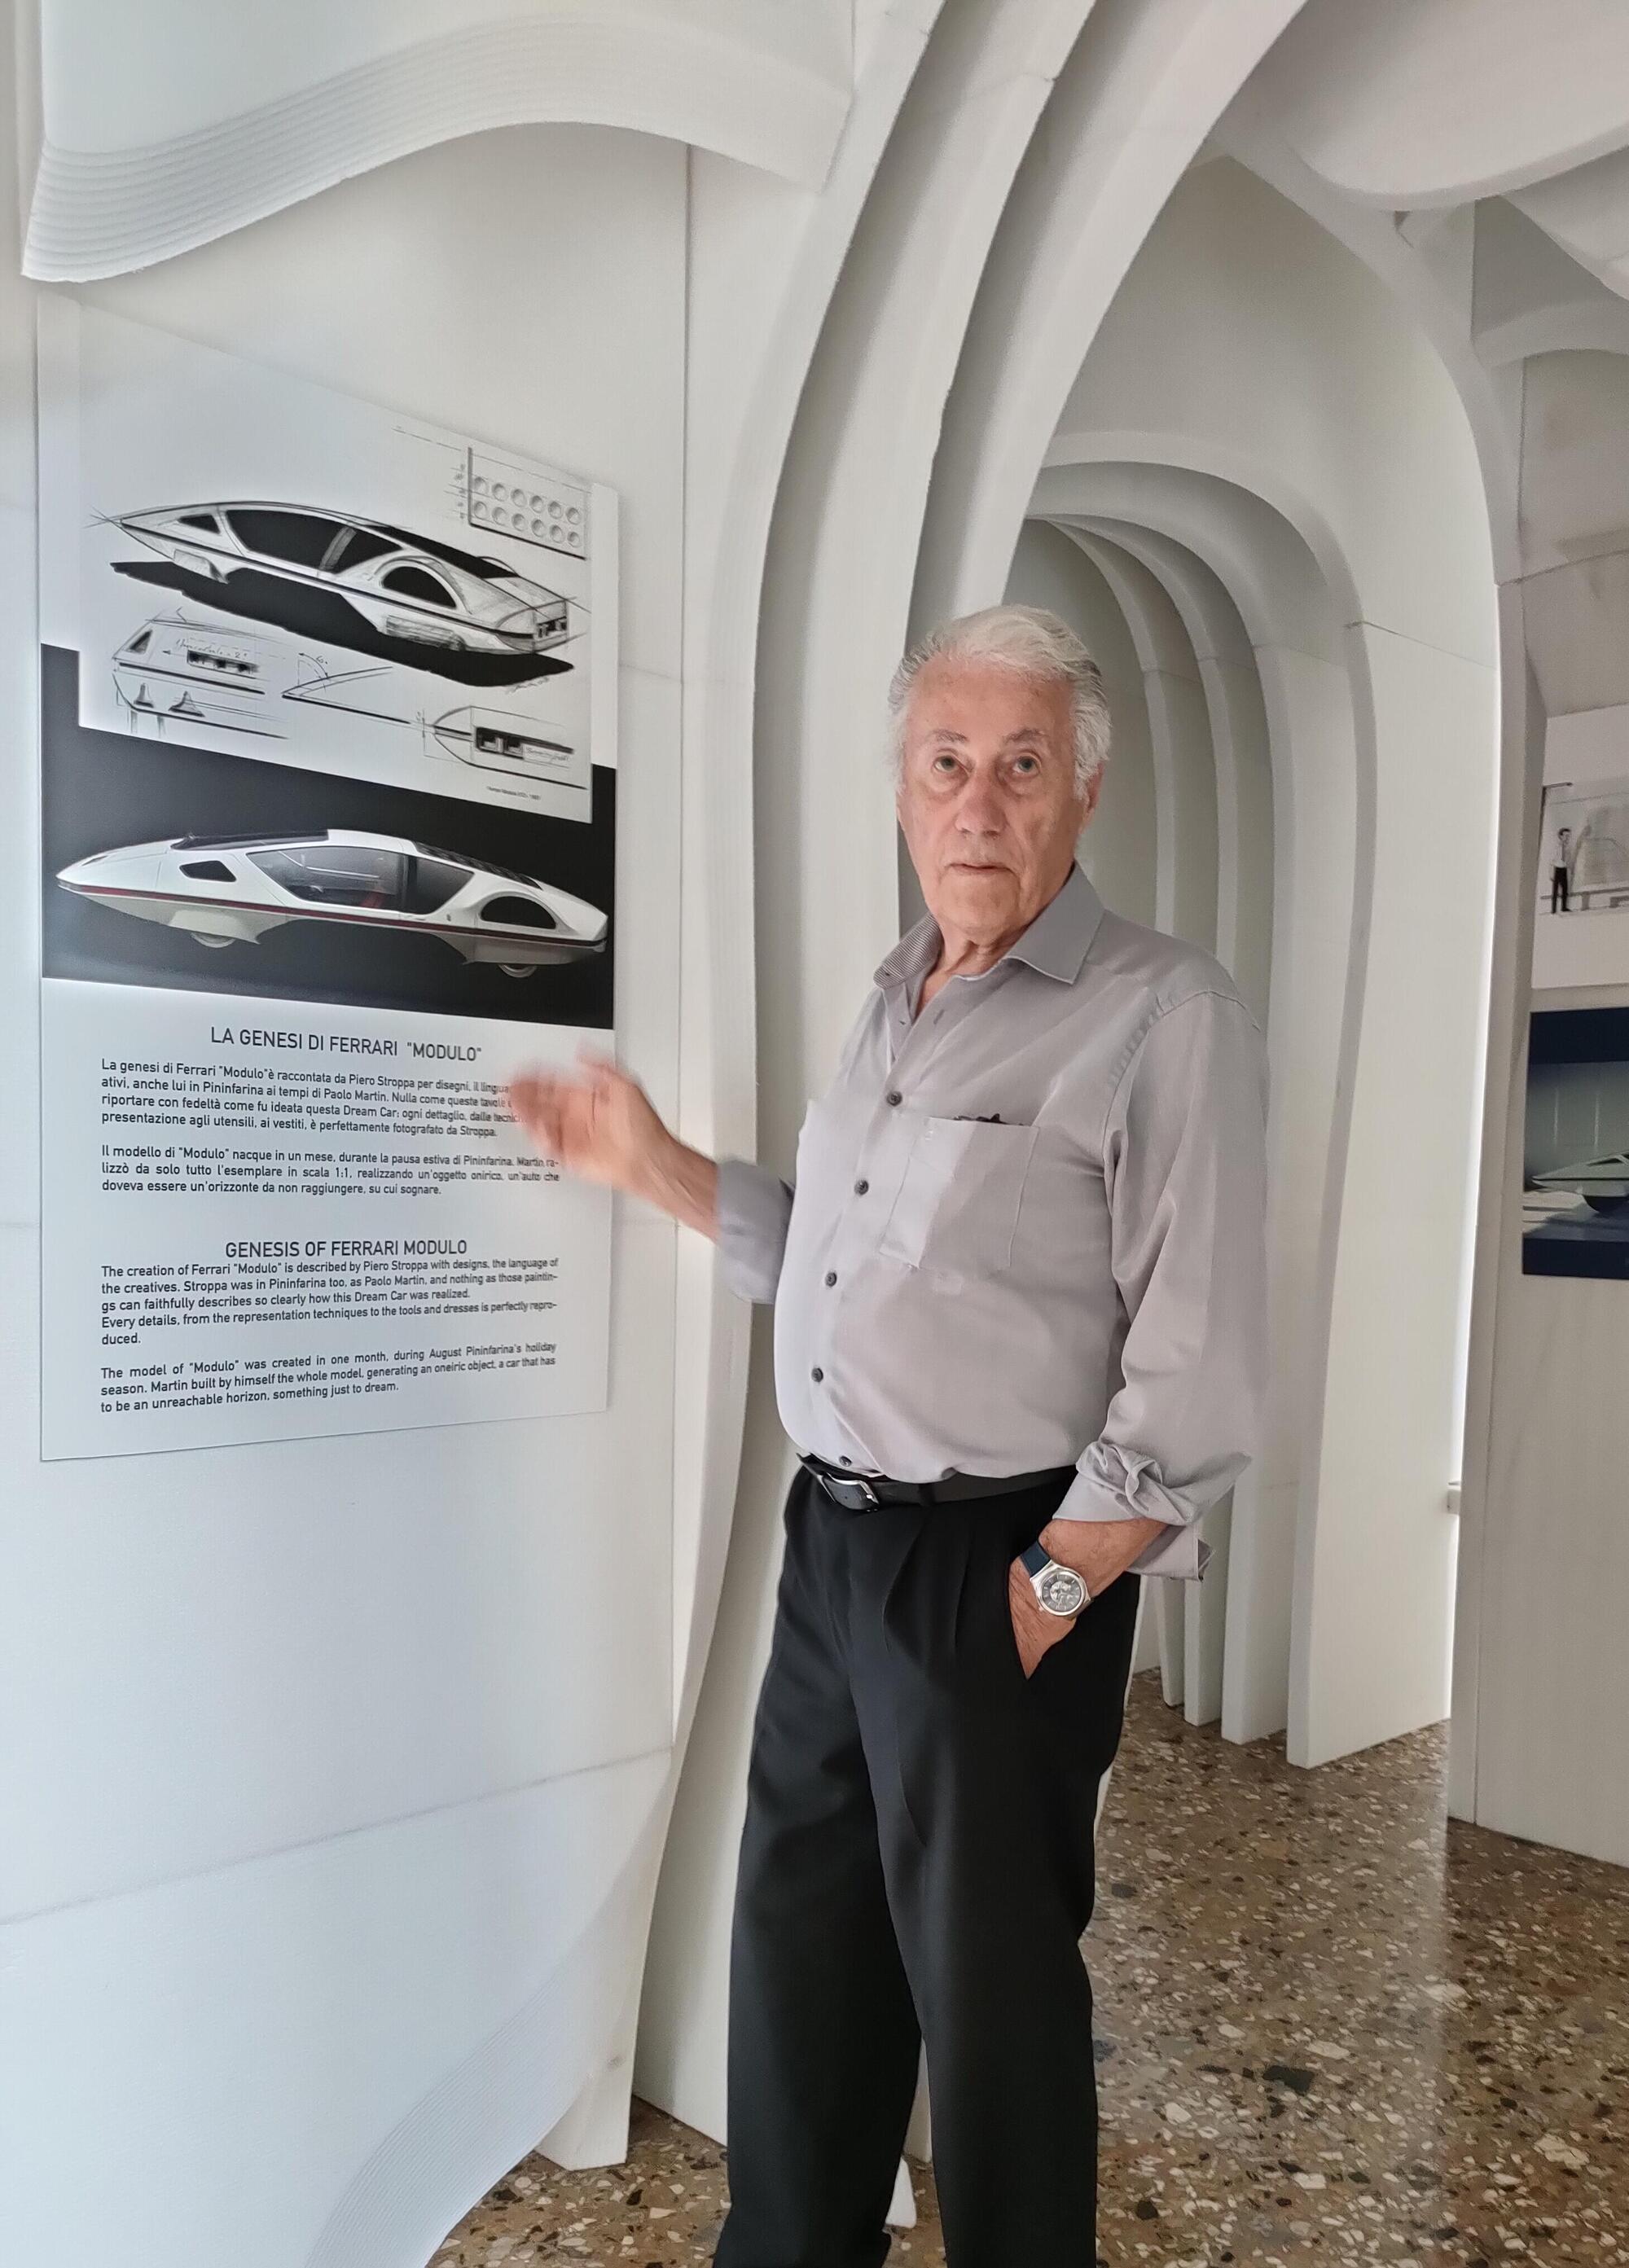 Paolo Martin e la Ferrari Modulo